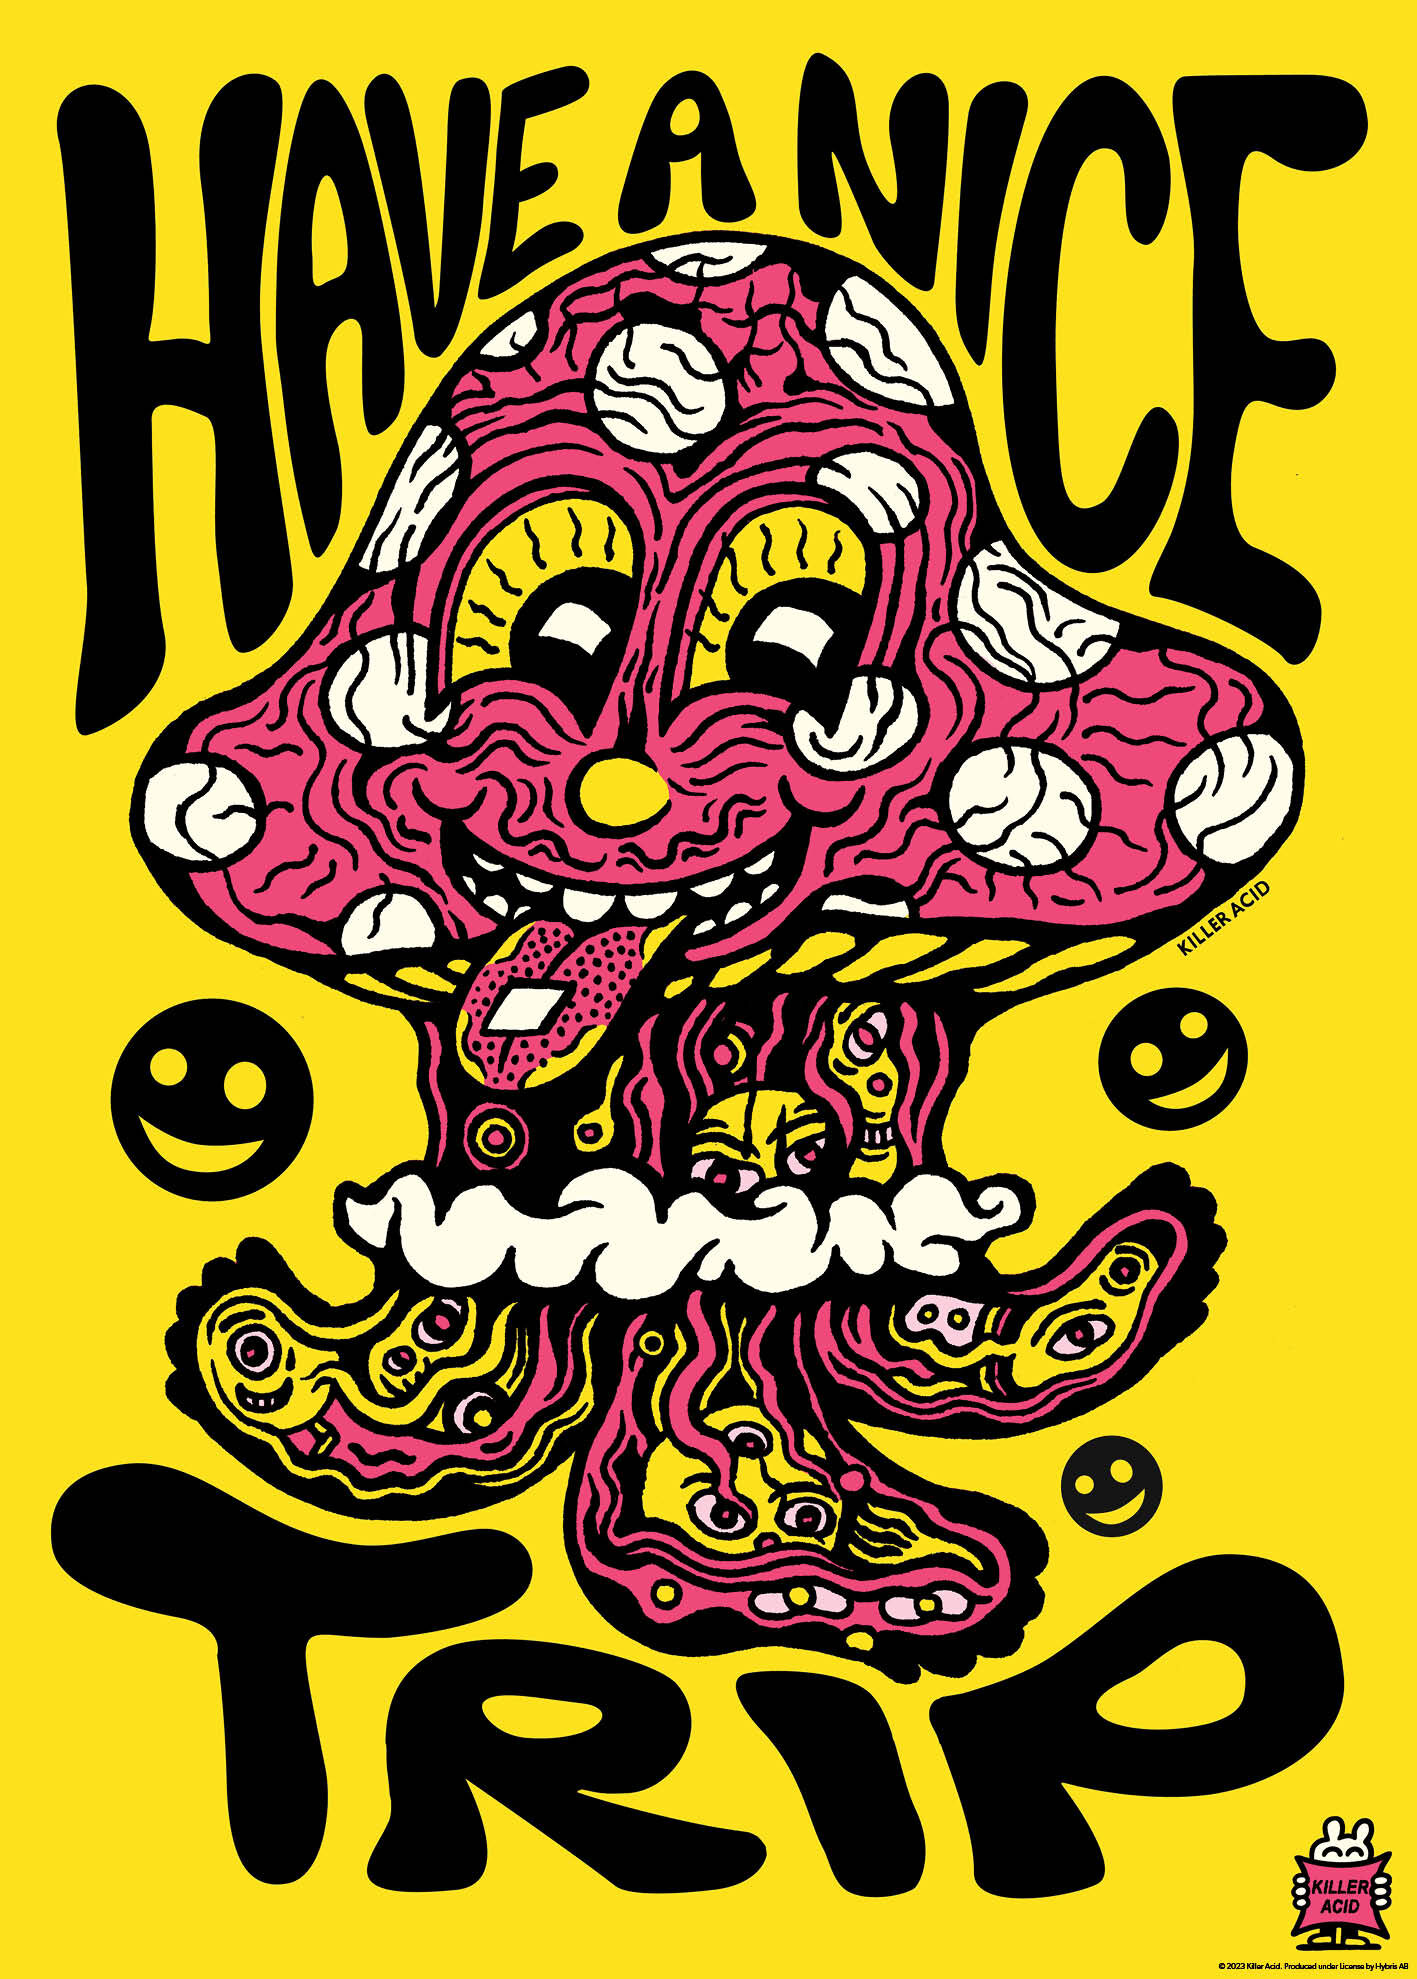 Killer Acid - Have A Nice Trip Poster